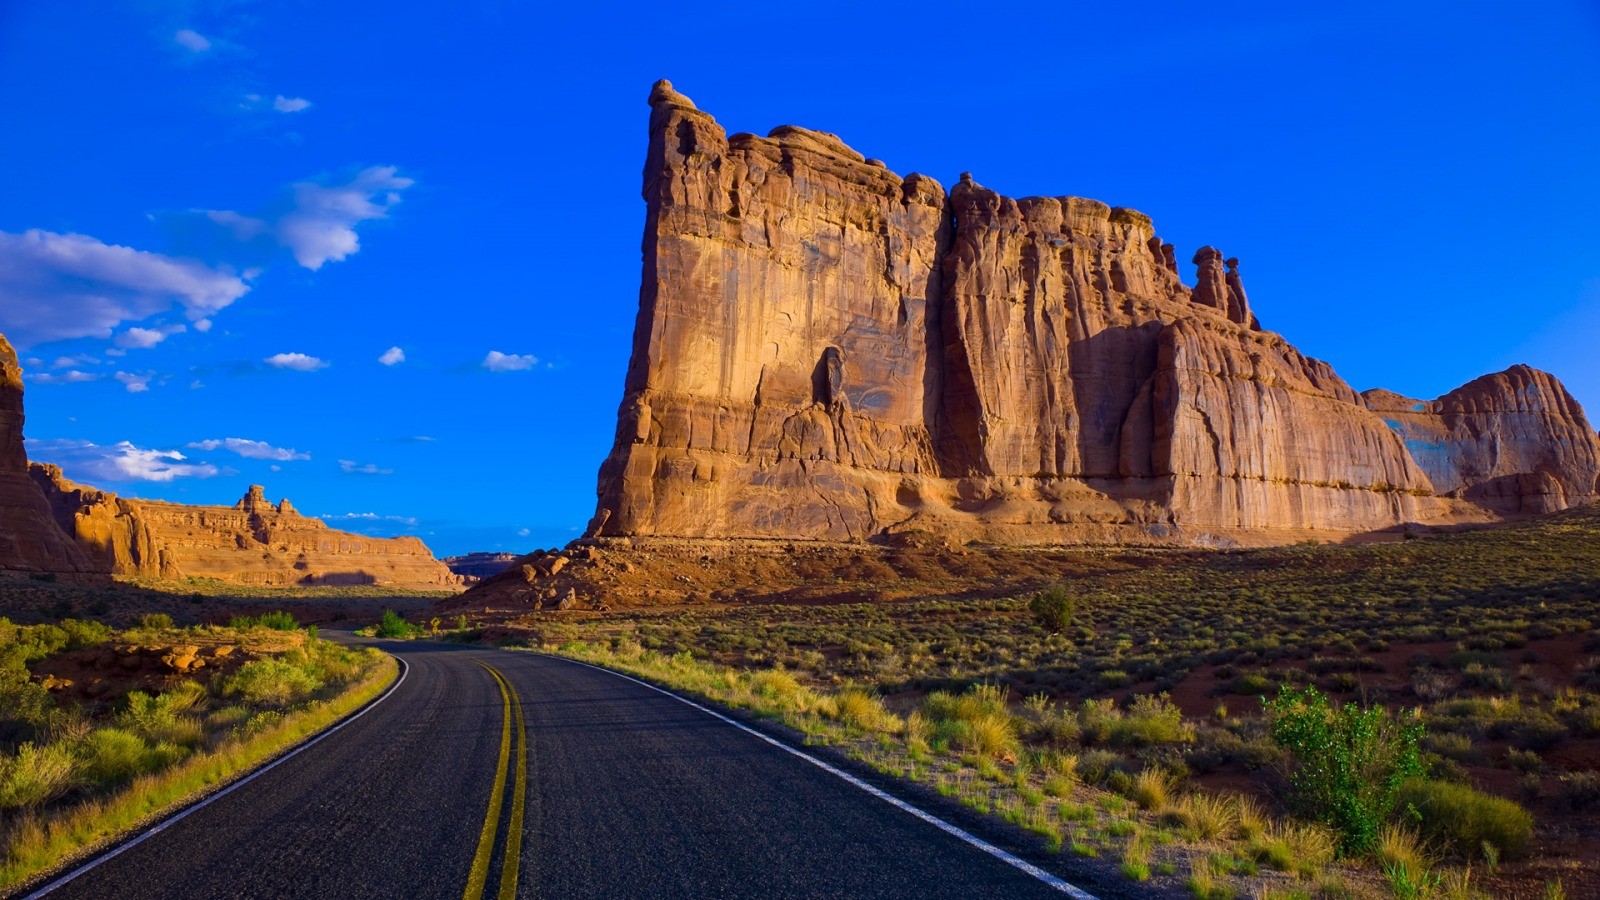 General 1600x900 road Arches National Park Utah landscape mountains national park rock formation asphalt USA